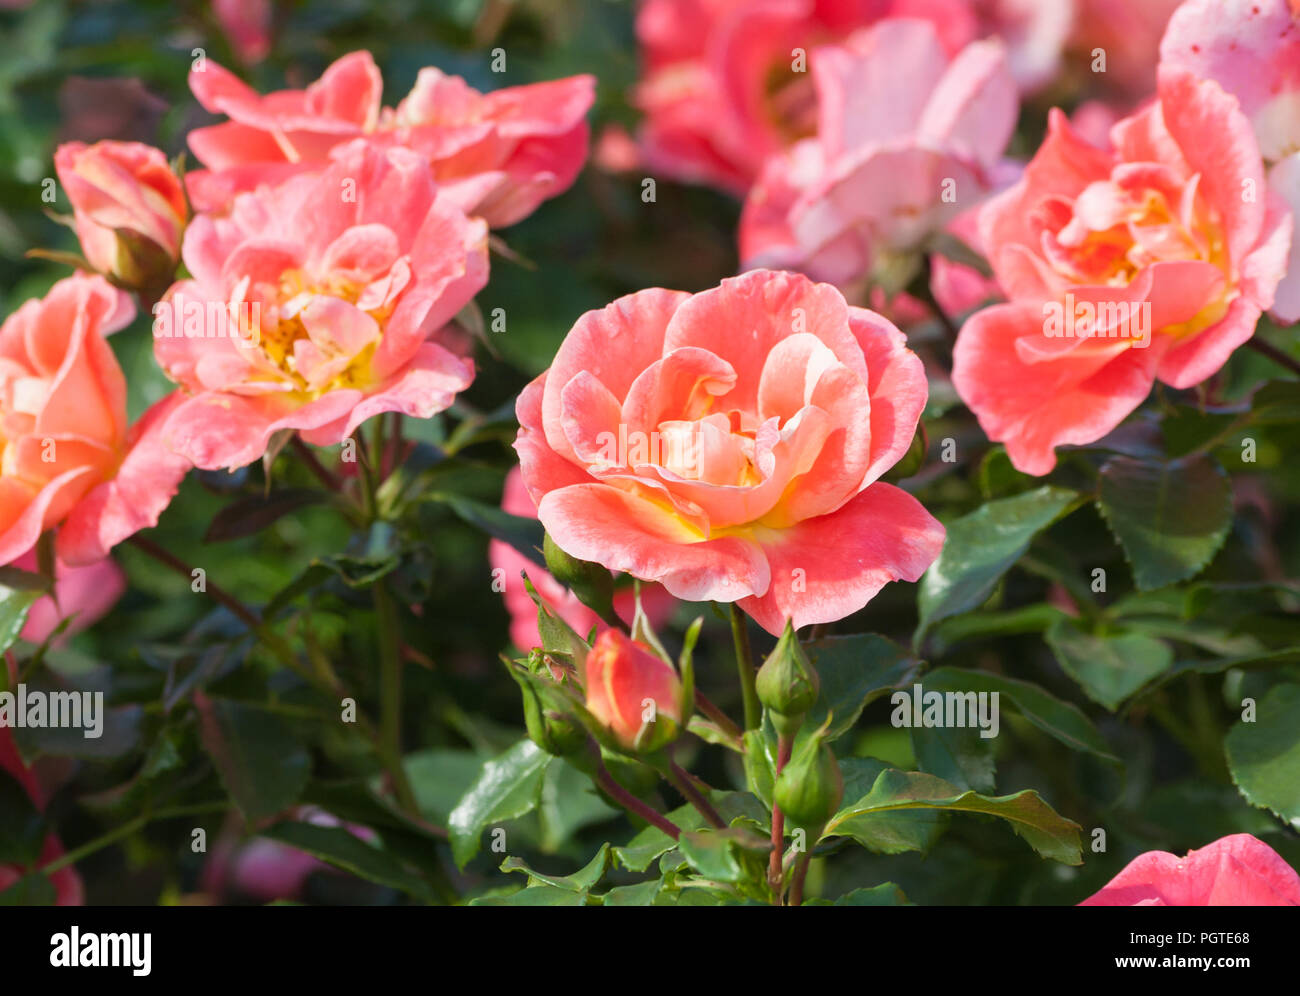 Rose Blume grade Airbrush, eine schöne orange-rosa Rose von mittelständischen Blume, in der Farbe der Blütenblätter gelb, orange und rosa Tönen, die Pflanze Stockfoto